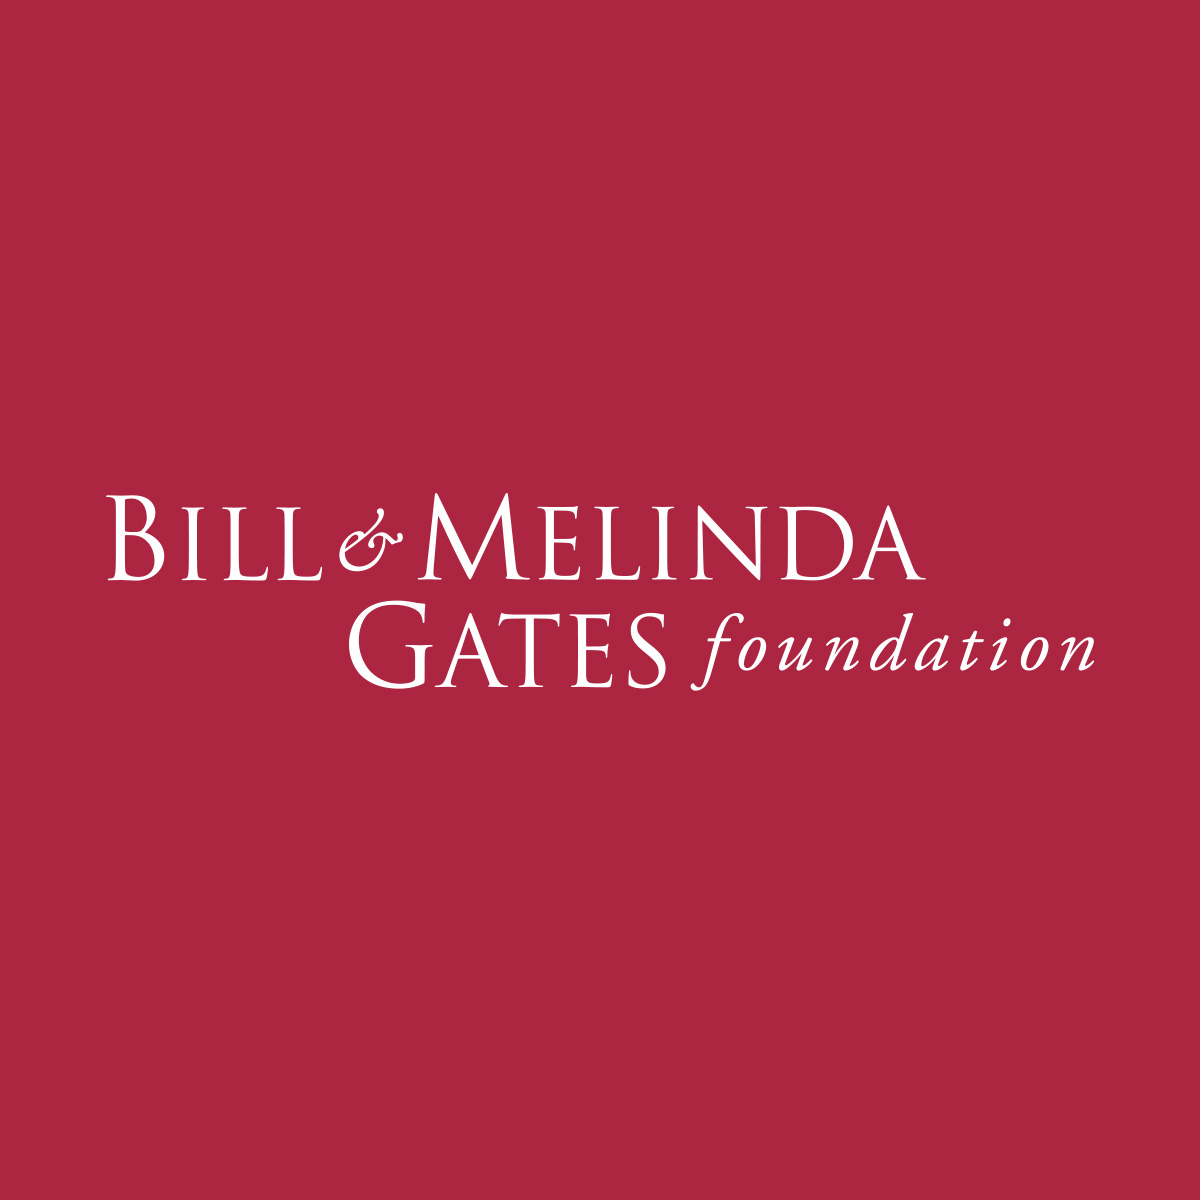 盖茨基金会支持抗<font color="red">艾滋病毒</font>和疟疾研究